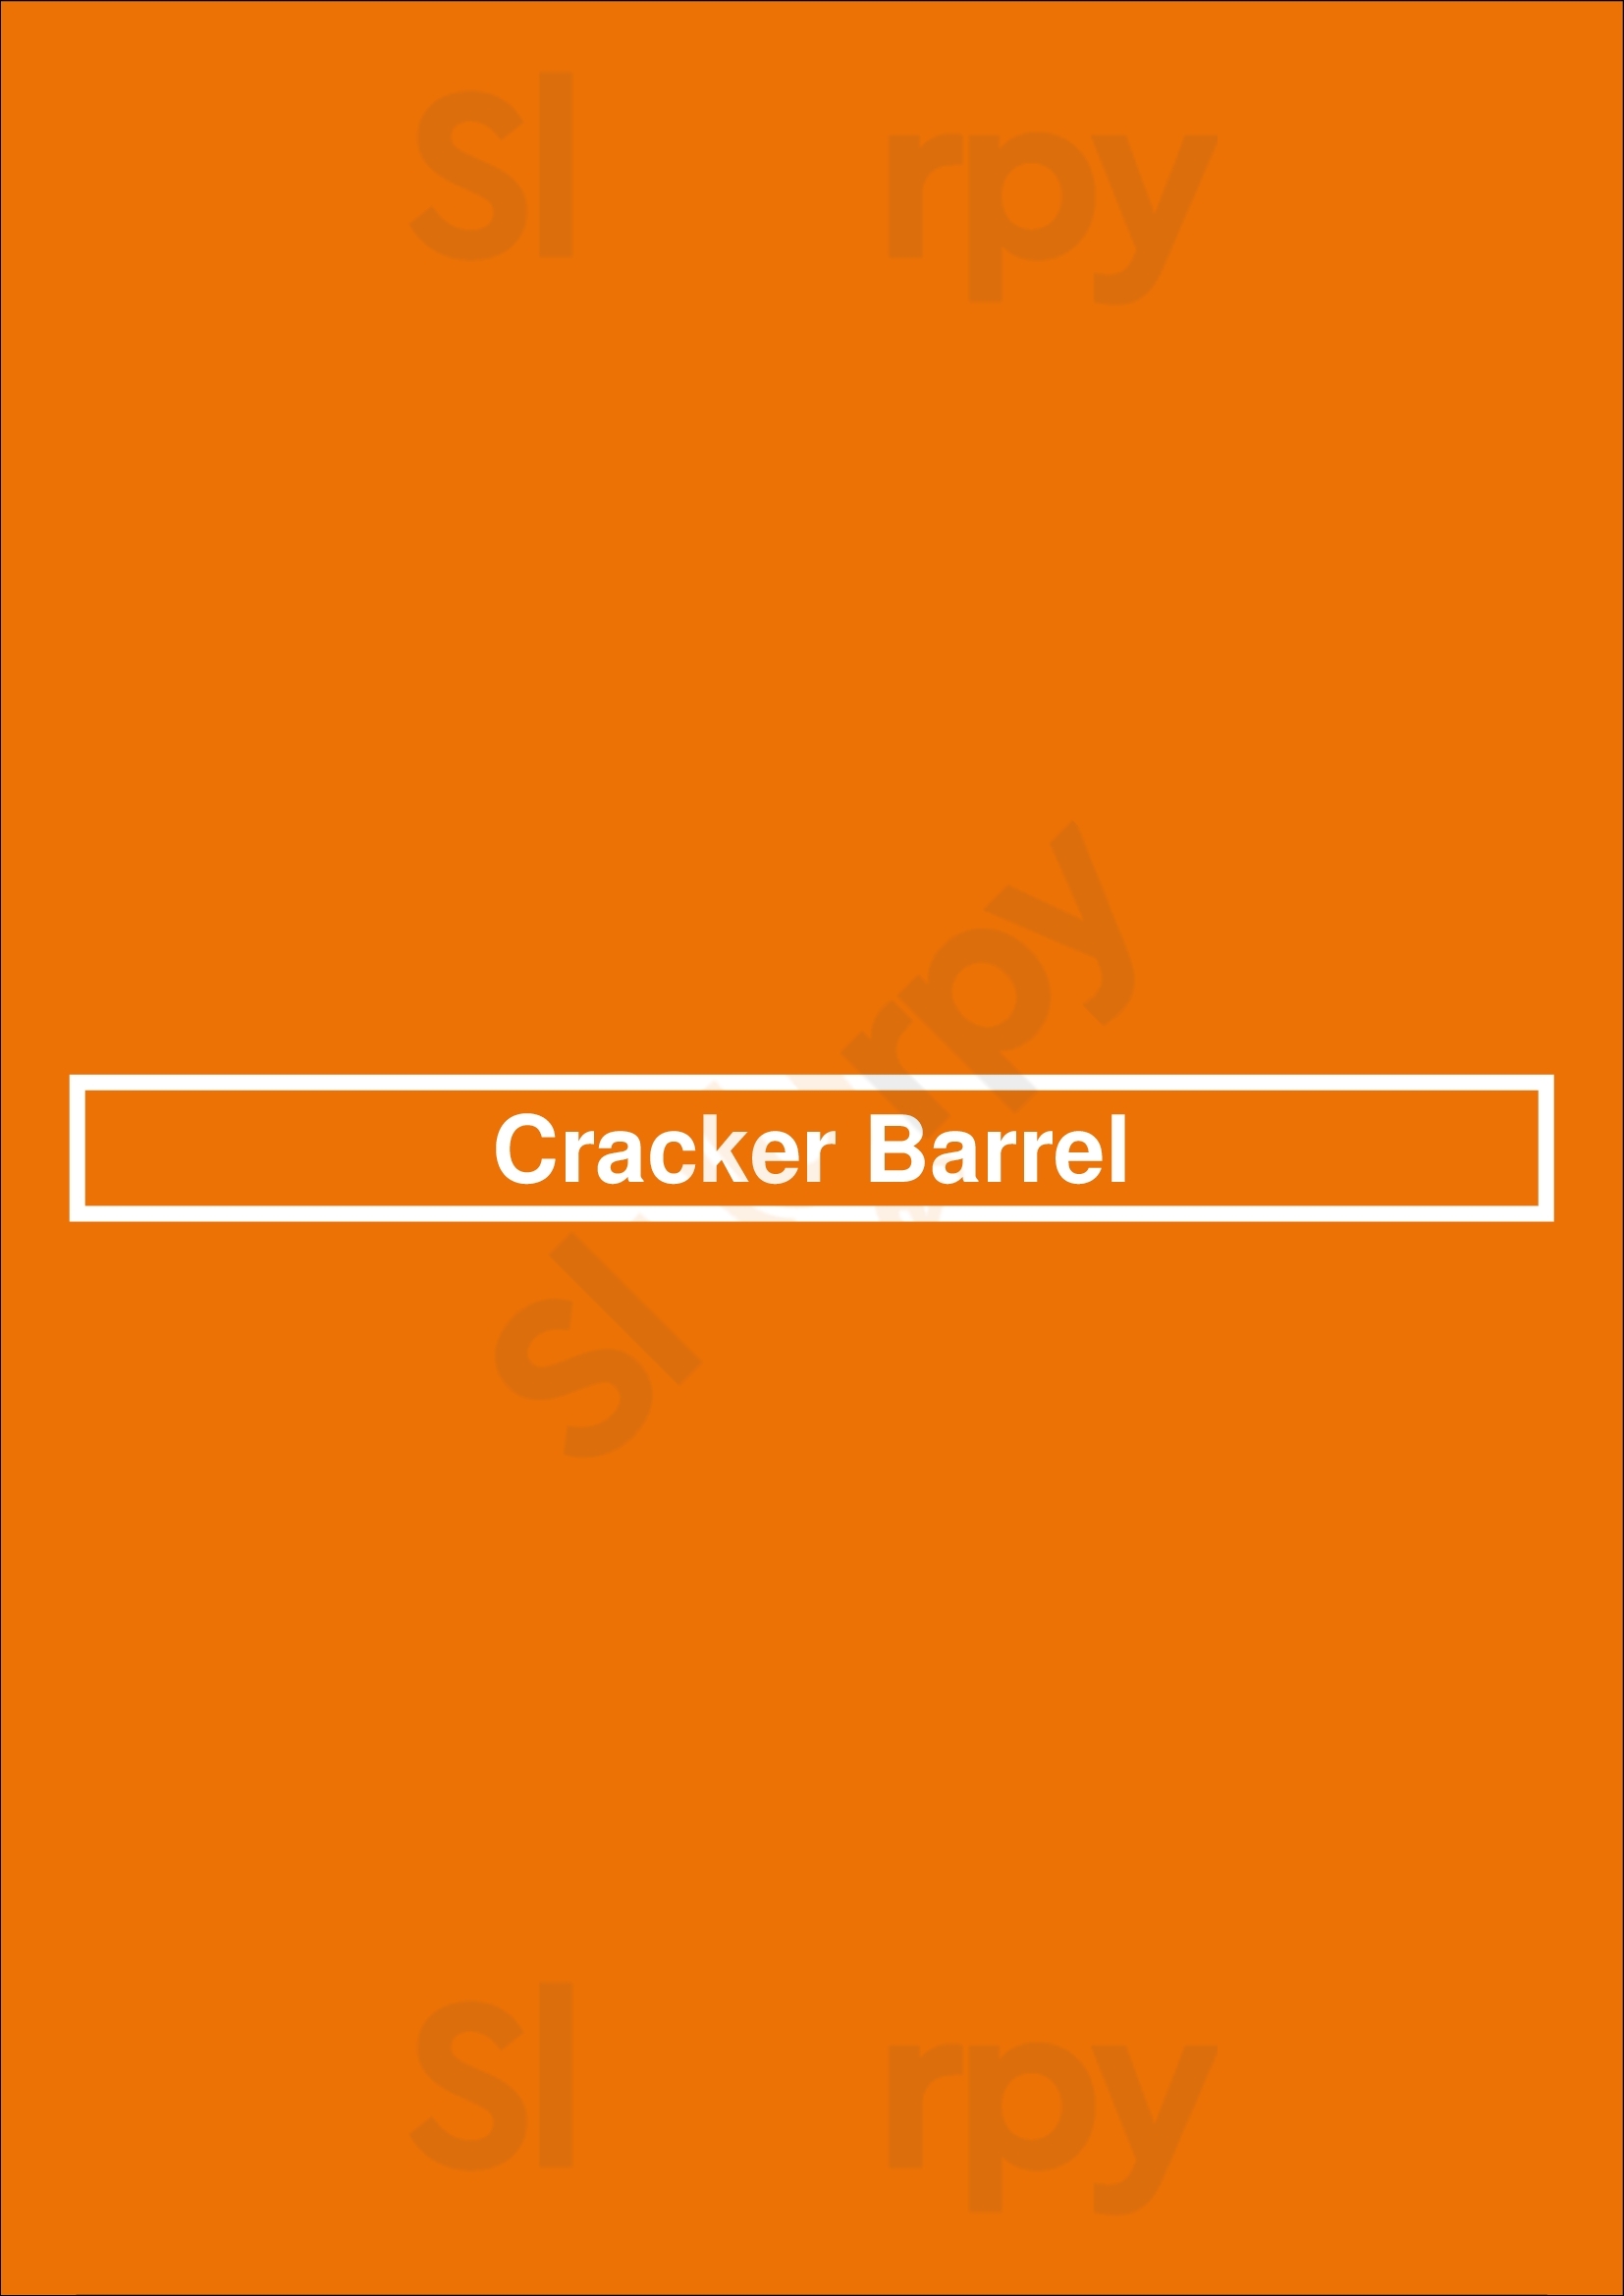 Cracker Barrel Pensacola Menu - 1